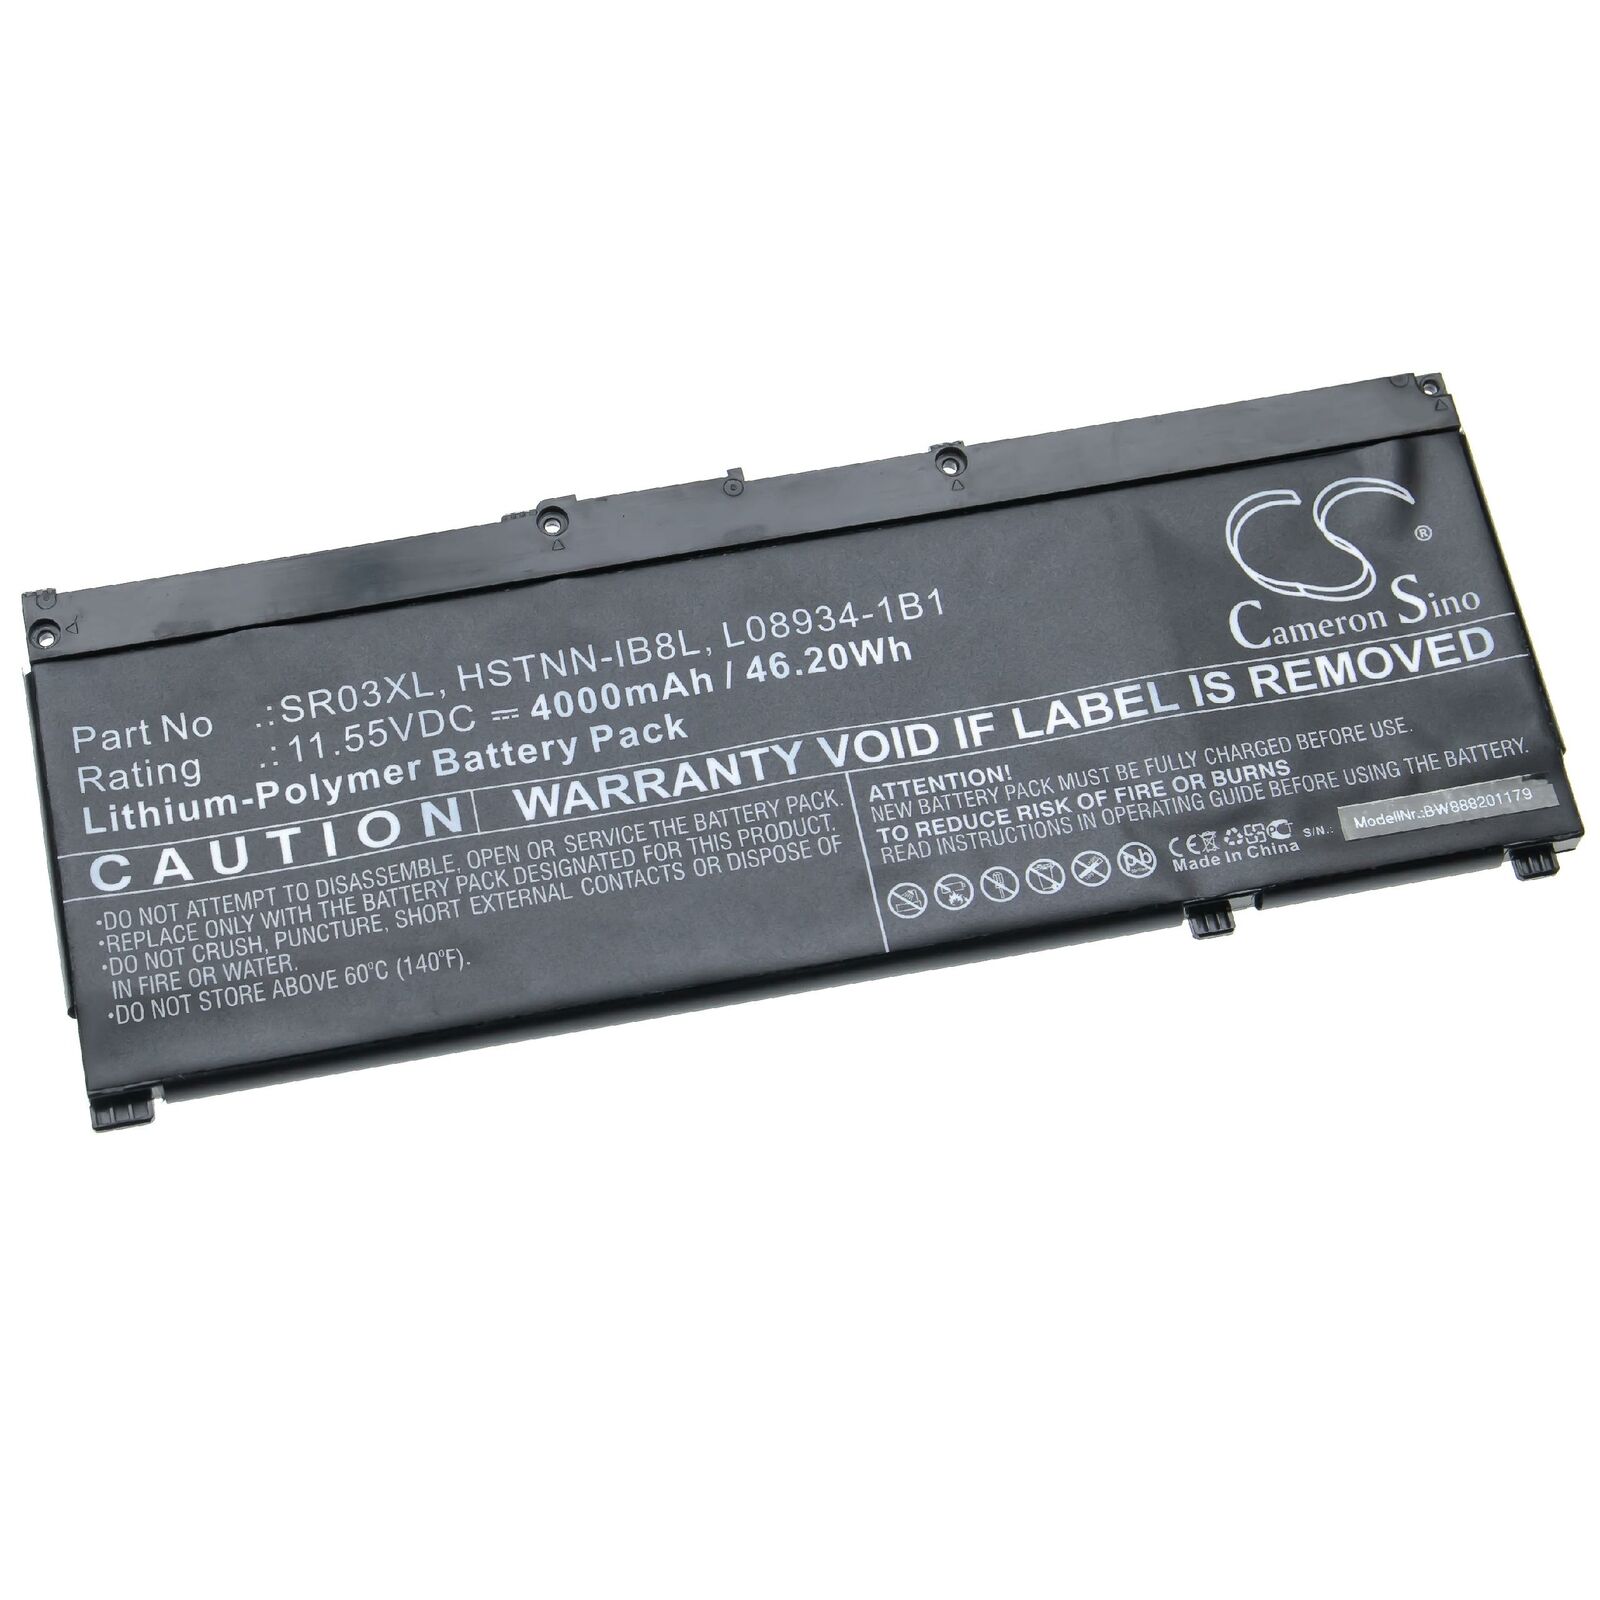 HP 11.55V HSTNN-IB8L, L08855-855, L08934-1B1, SR03XL kompatybilny bateria